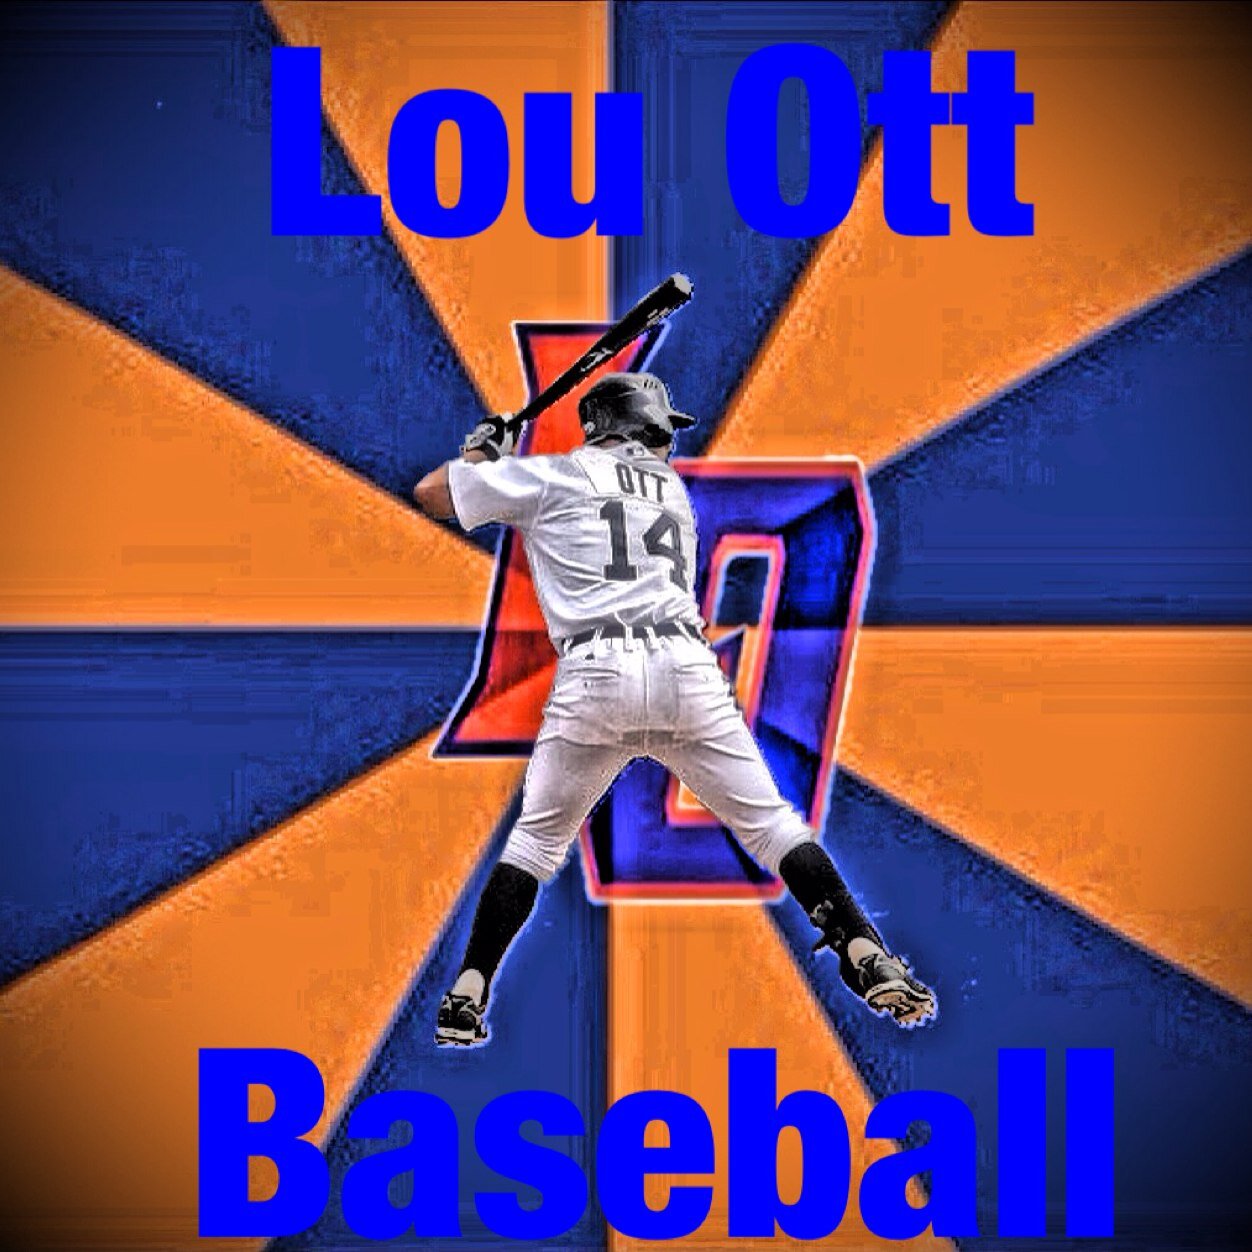 Lou Ott Baseball